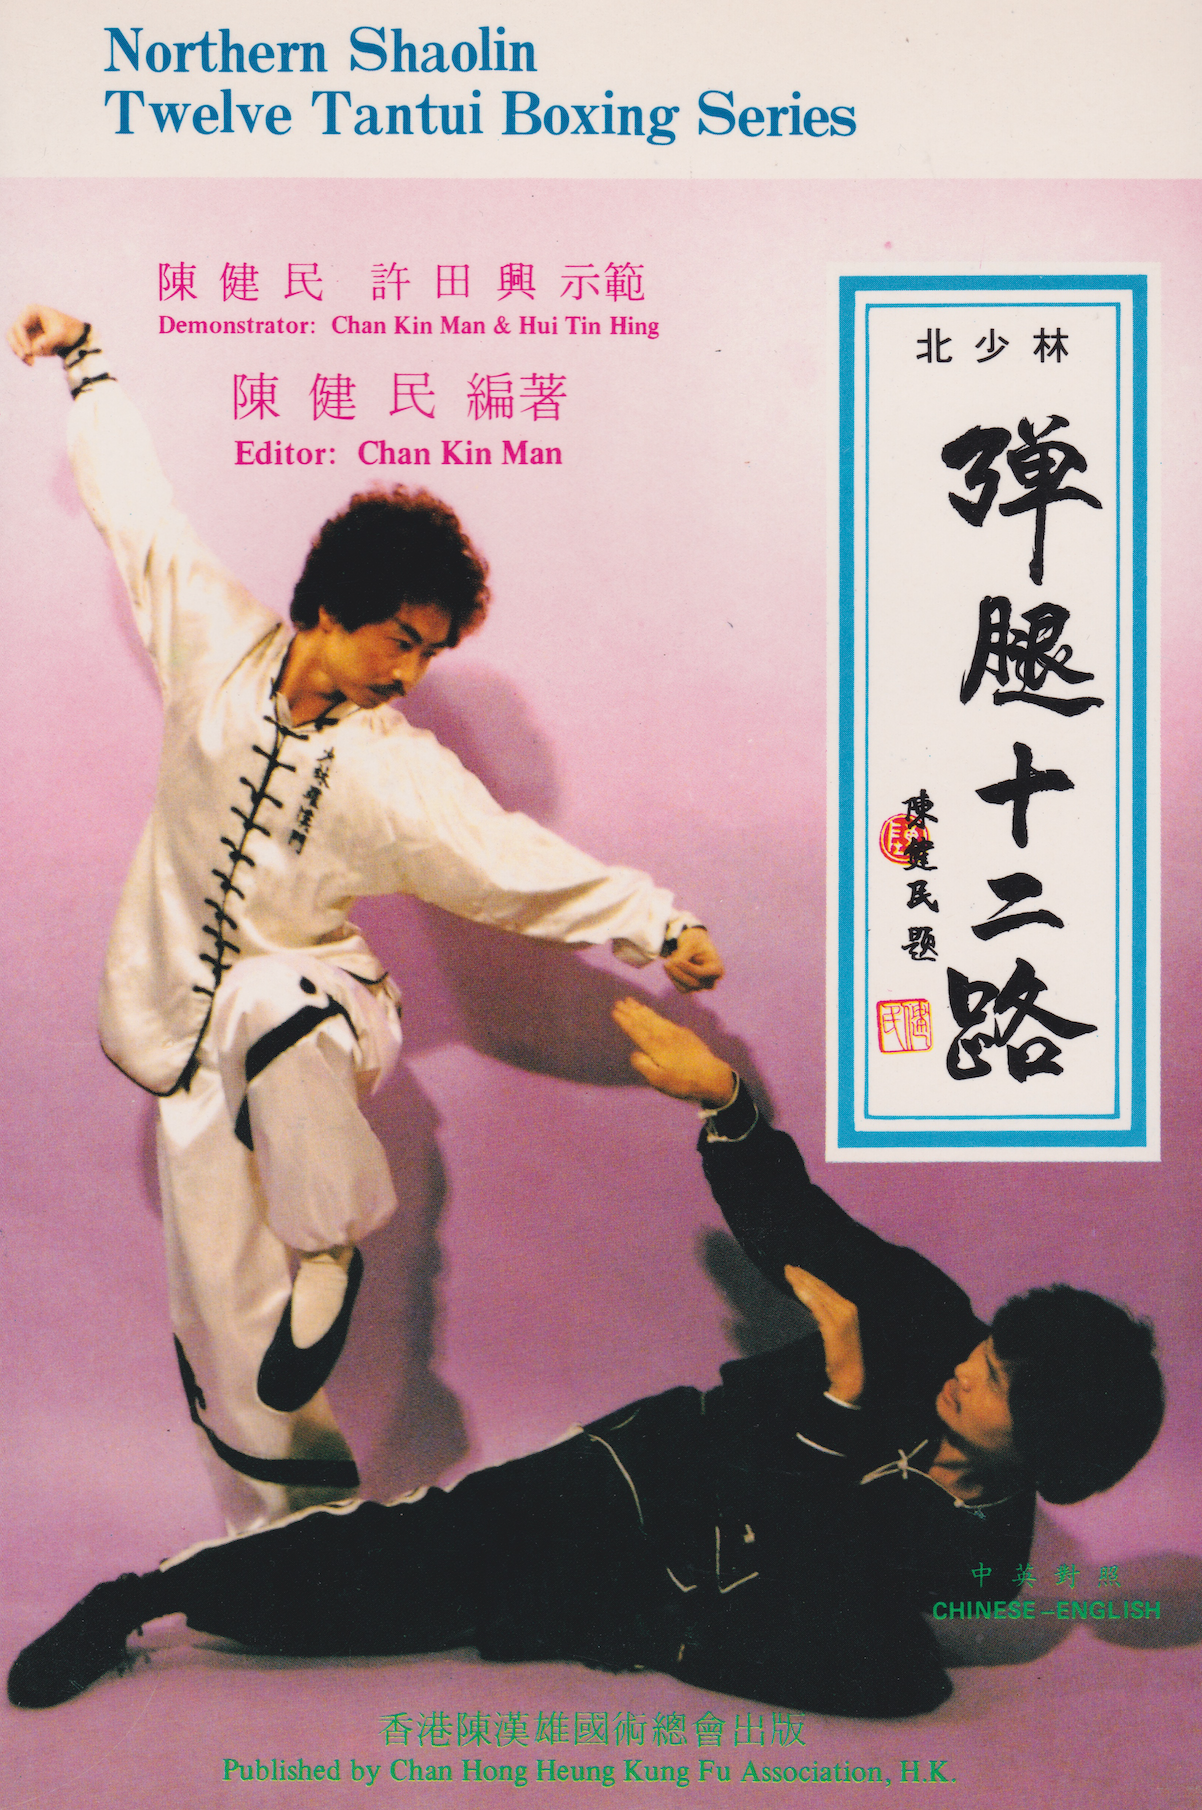 シャン・キン・マン著「Northern Shaolin Twelve Tantui Boxing Series」